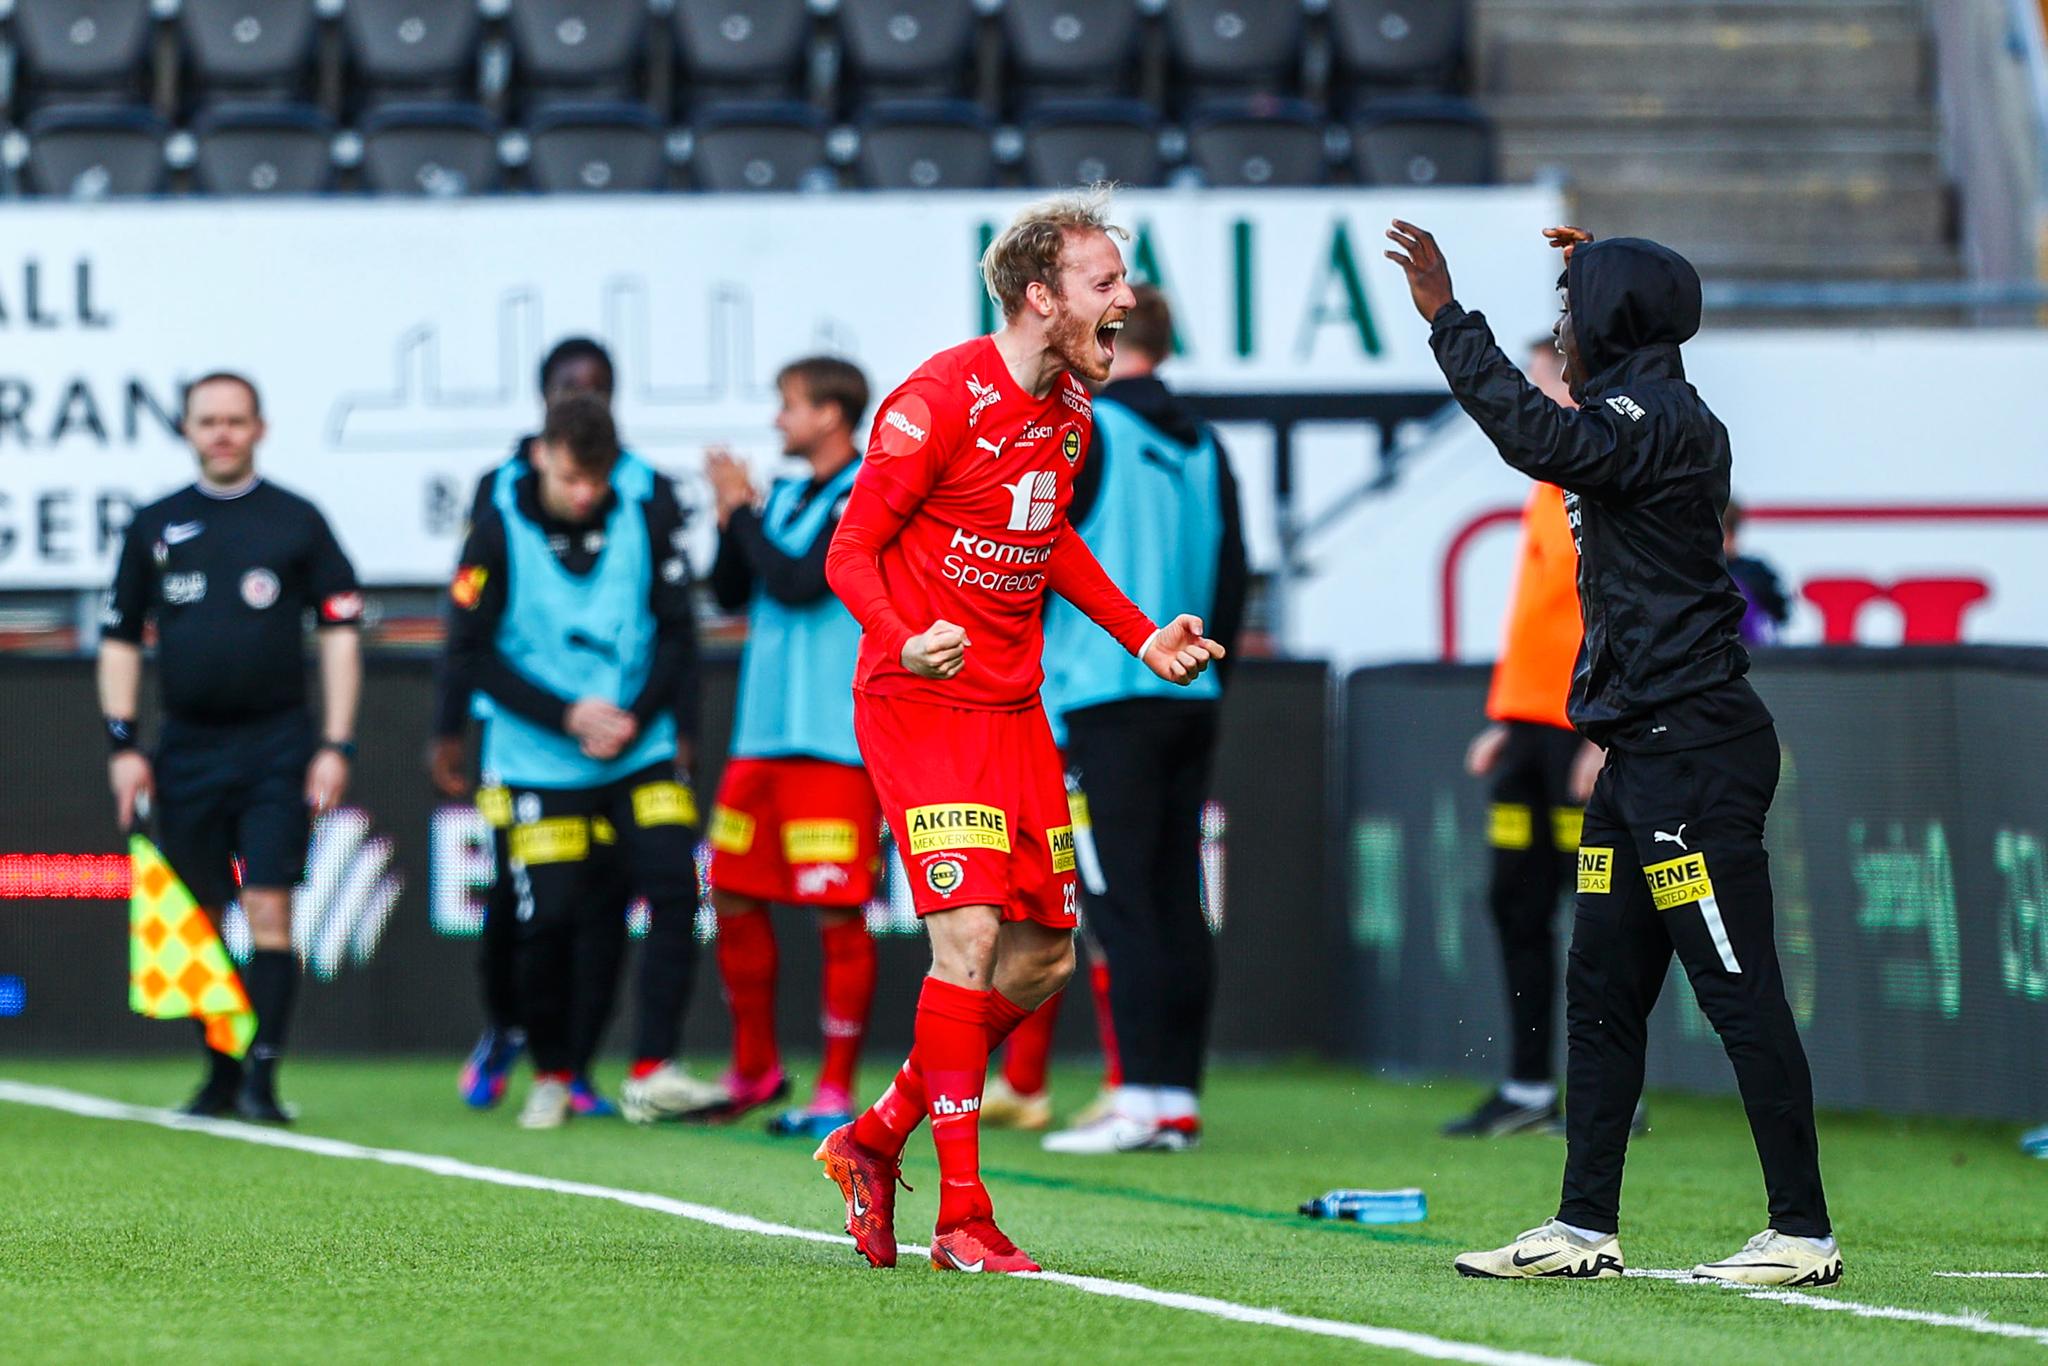 Lillestrøm rystet Bodø/Glimt på Aspmyra – Glimt ute av cupen